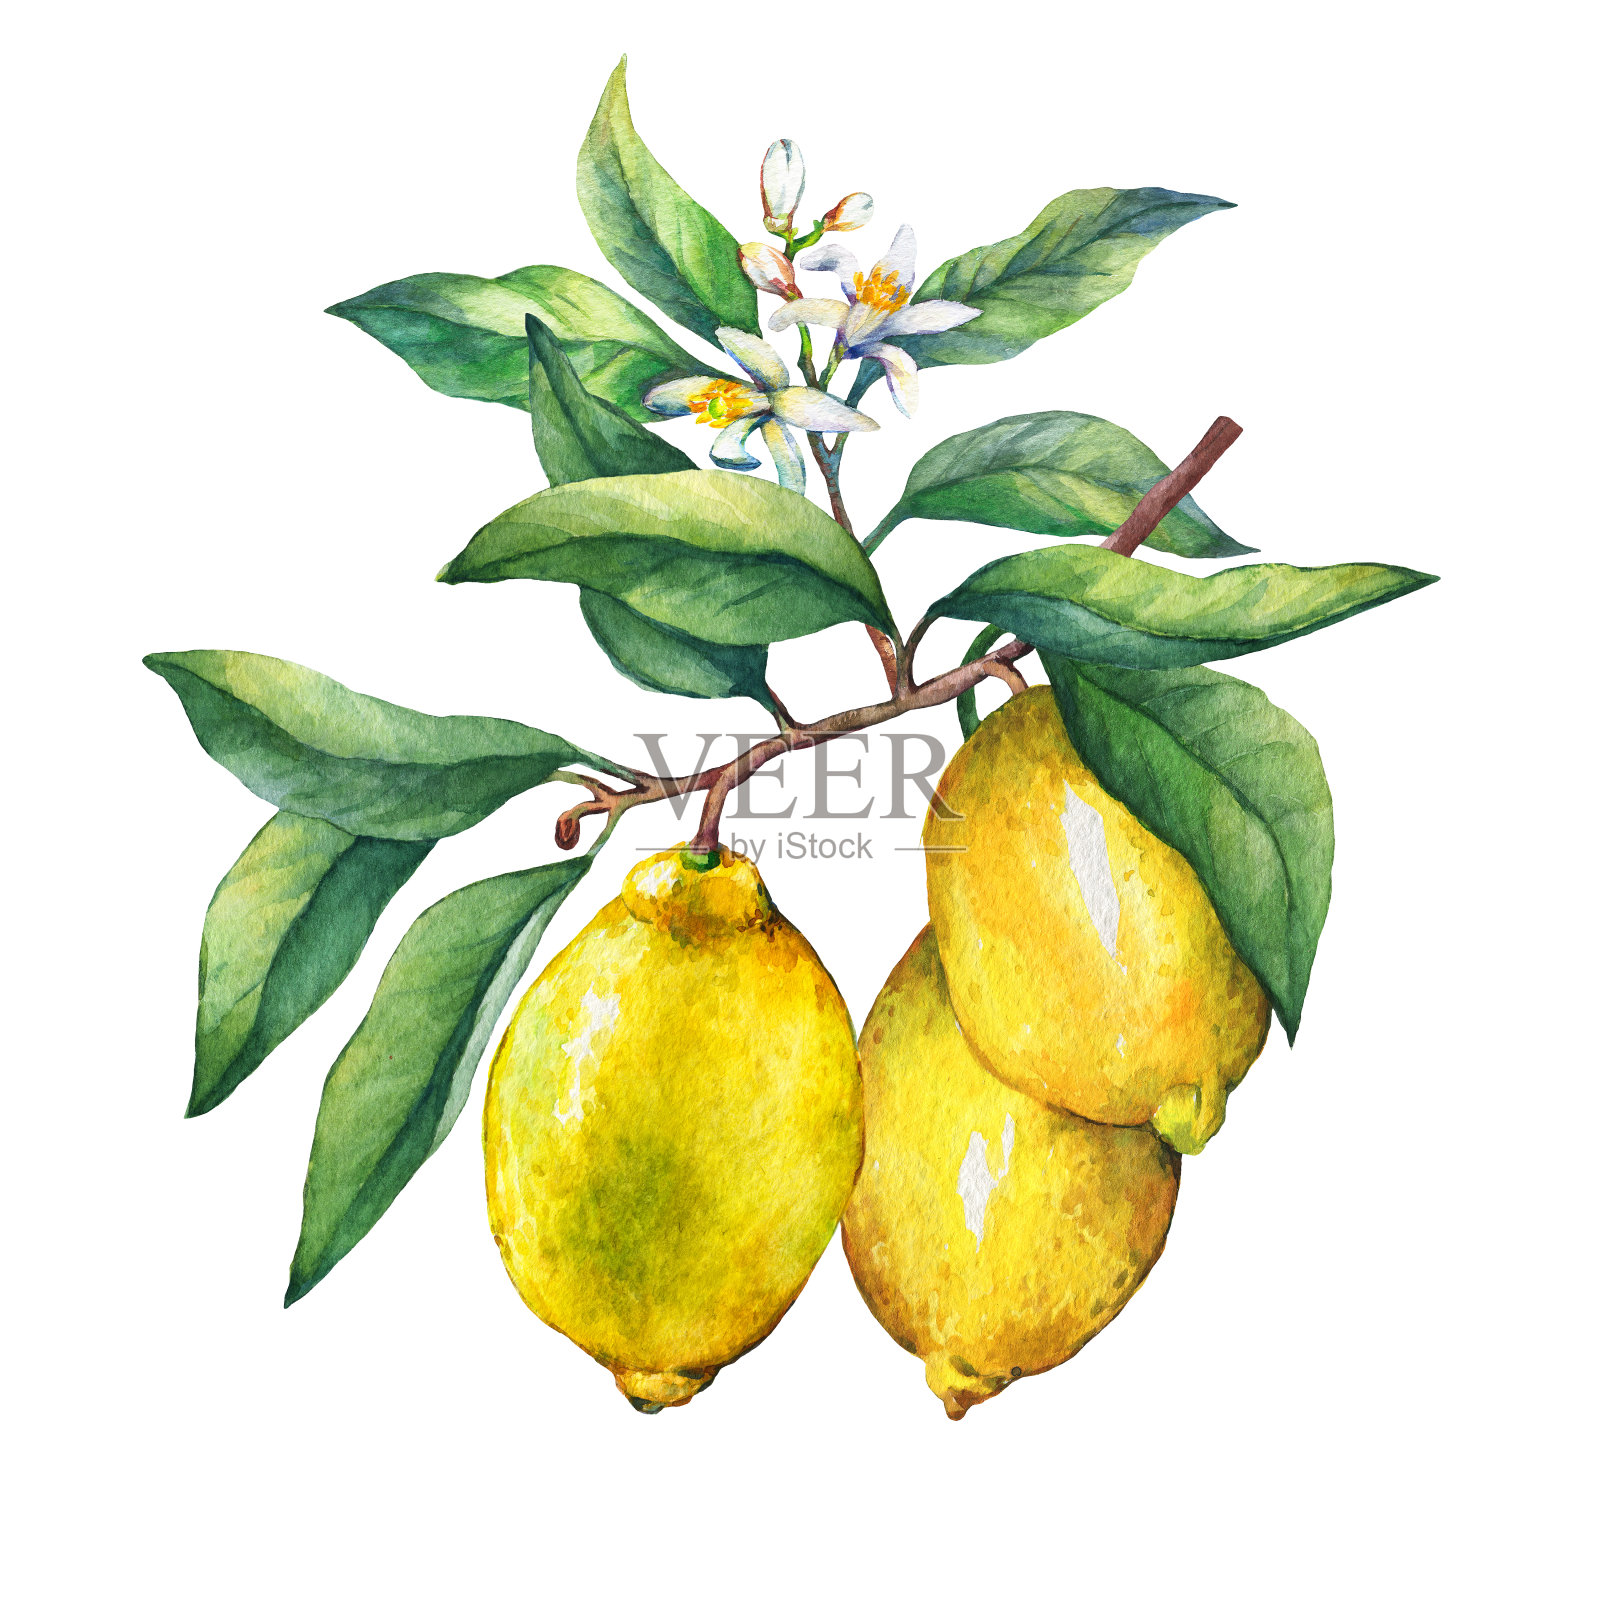 新鲜的柑橘类水果，在树枝上的柠檬水果，绿色的叶子，芽和花。手绘水彩画在白色的背景。插画图片素材